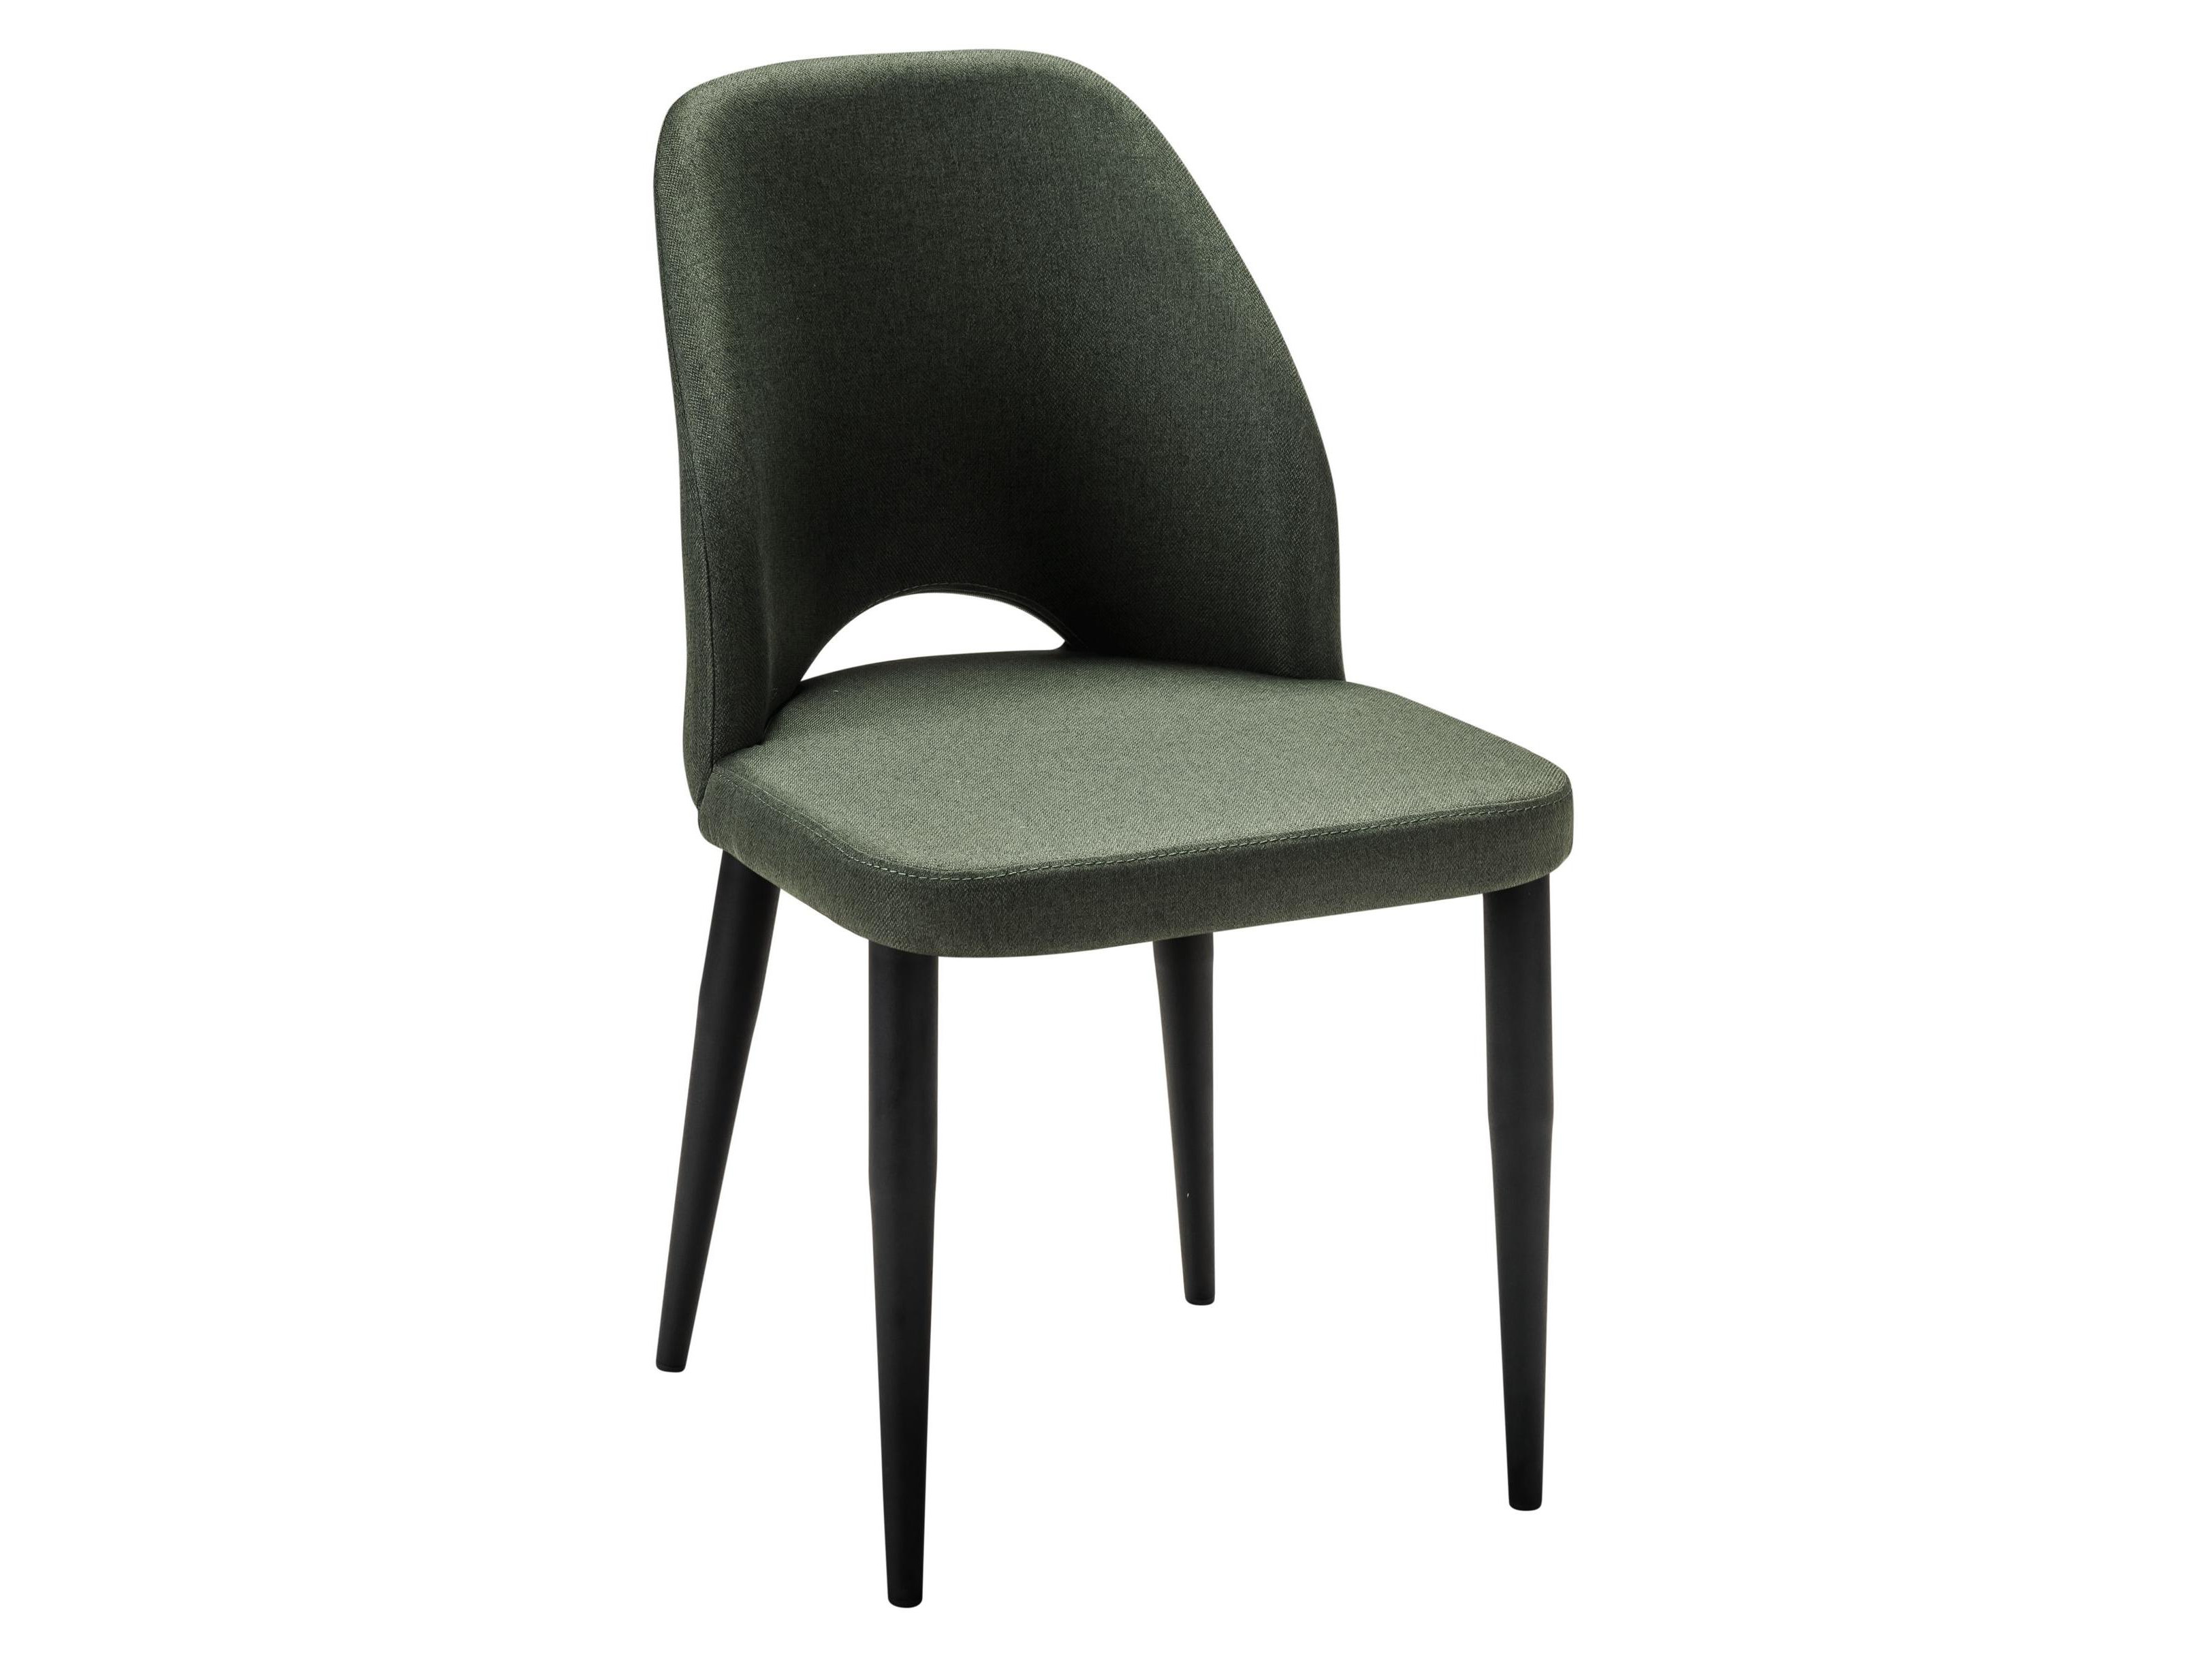 Стул Ledger темно-зеленый/черный Зеленый, Металл стул валенсия sn рогожка темно синий комплект 4 стула